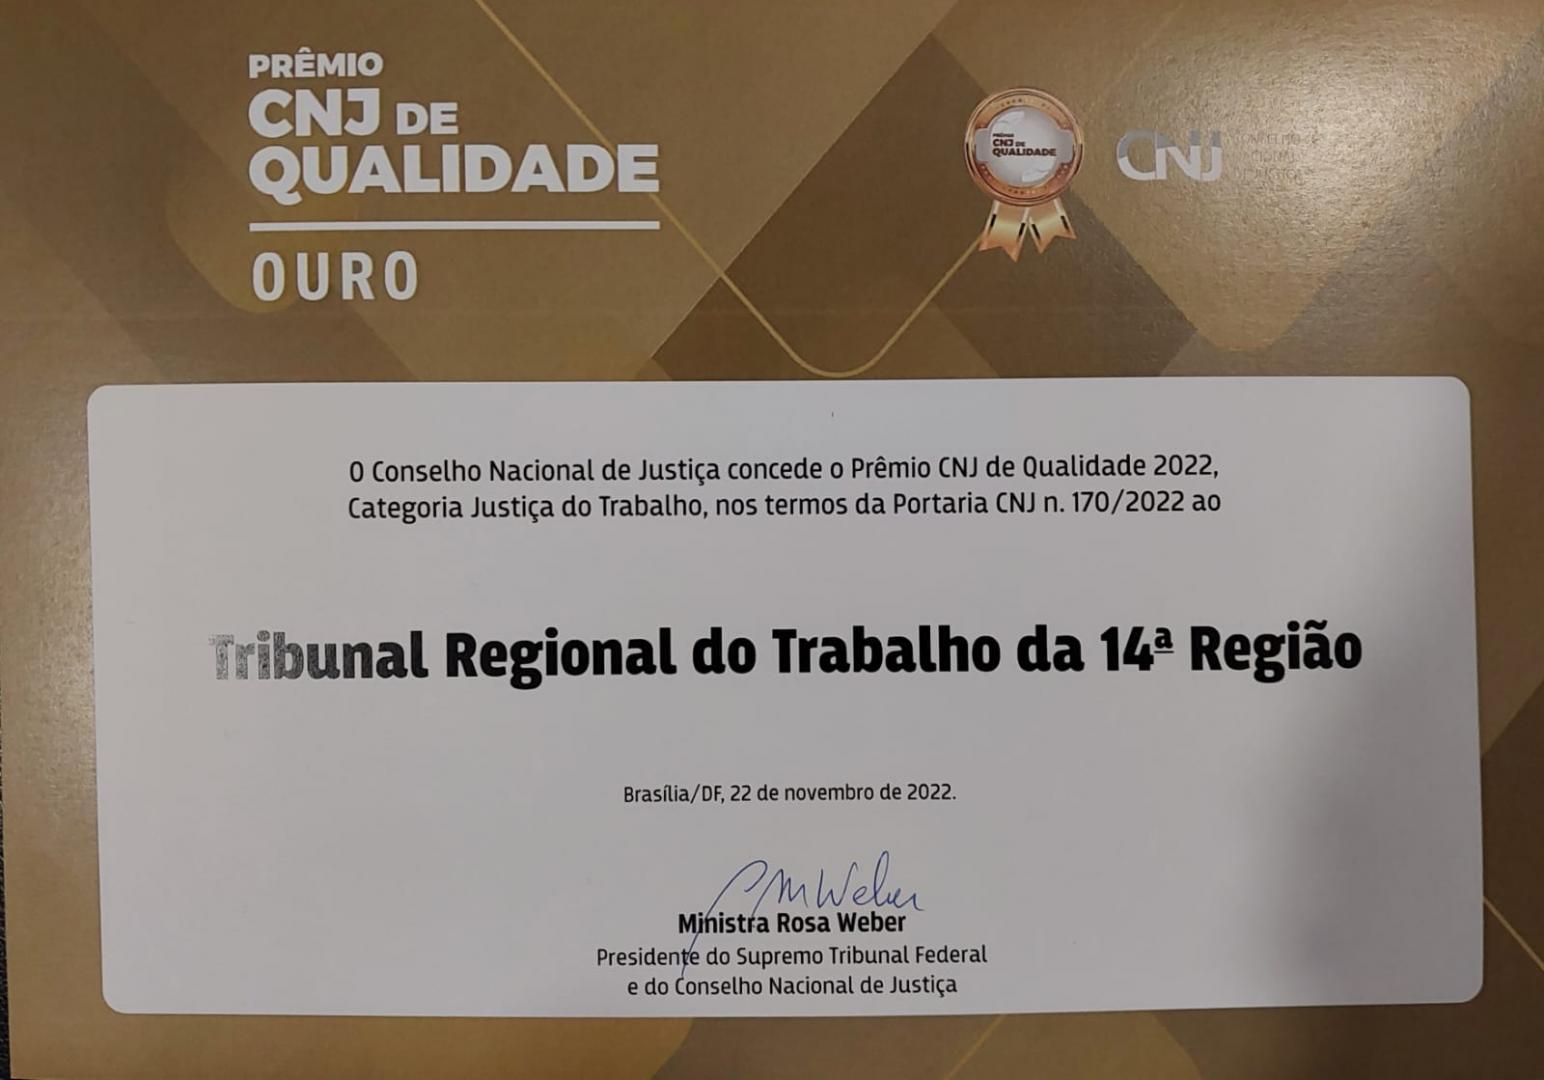 Prêmio CNJ de Qualidade